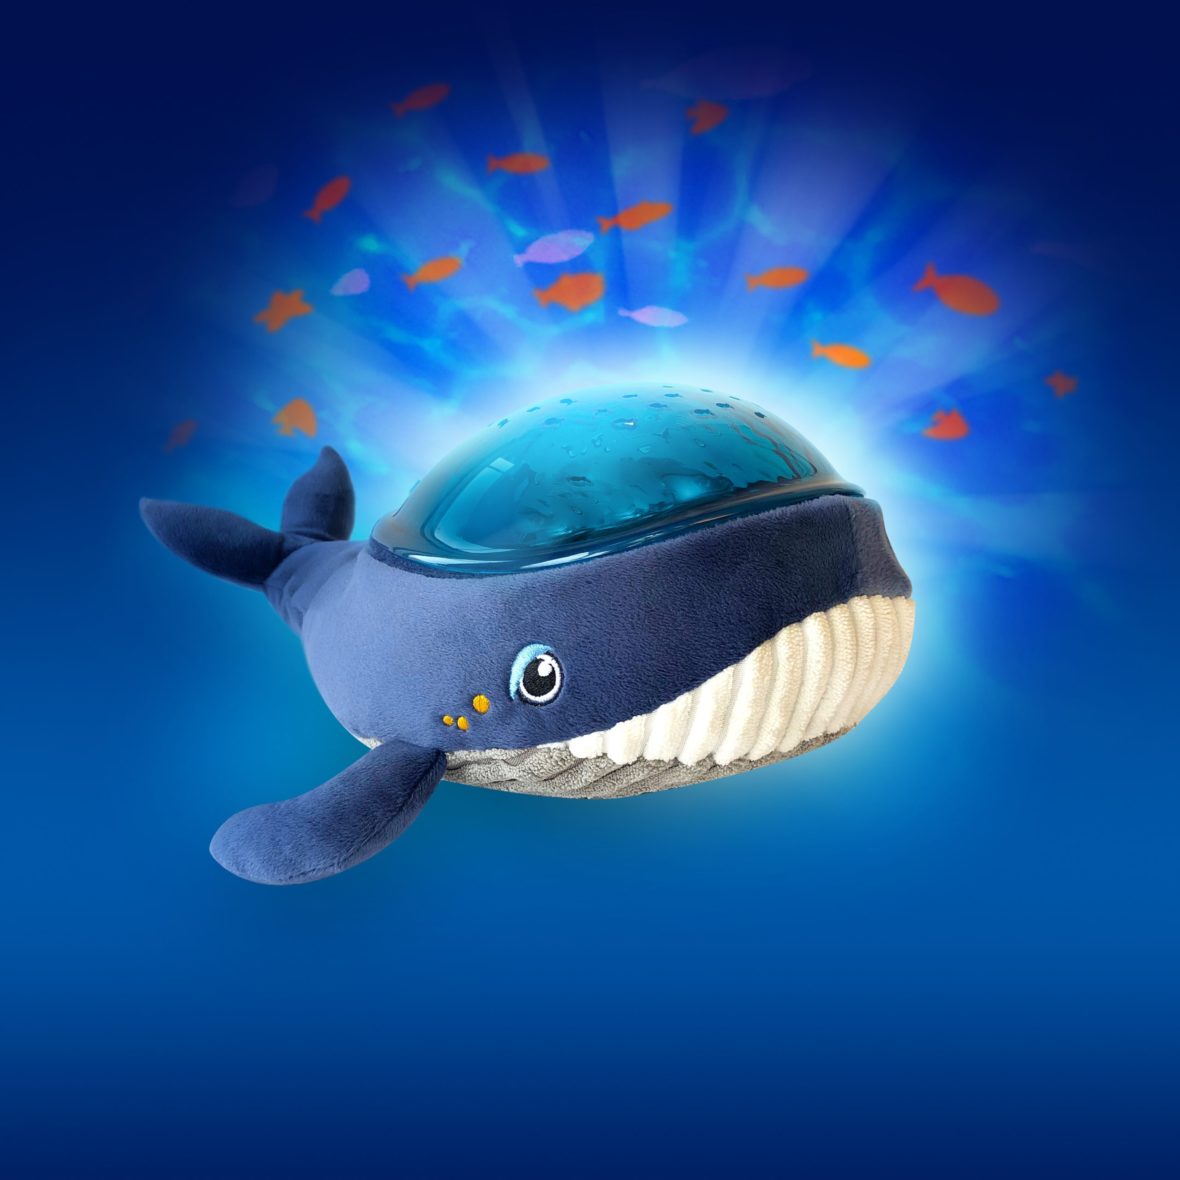 Μουσικός Προβολέας  “Υφασμάτινη Φάλαινα” με εικόνες θαλάσσης